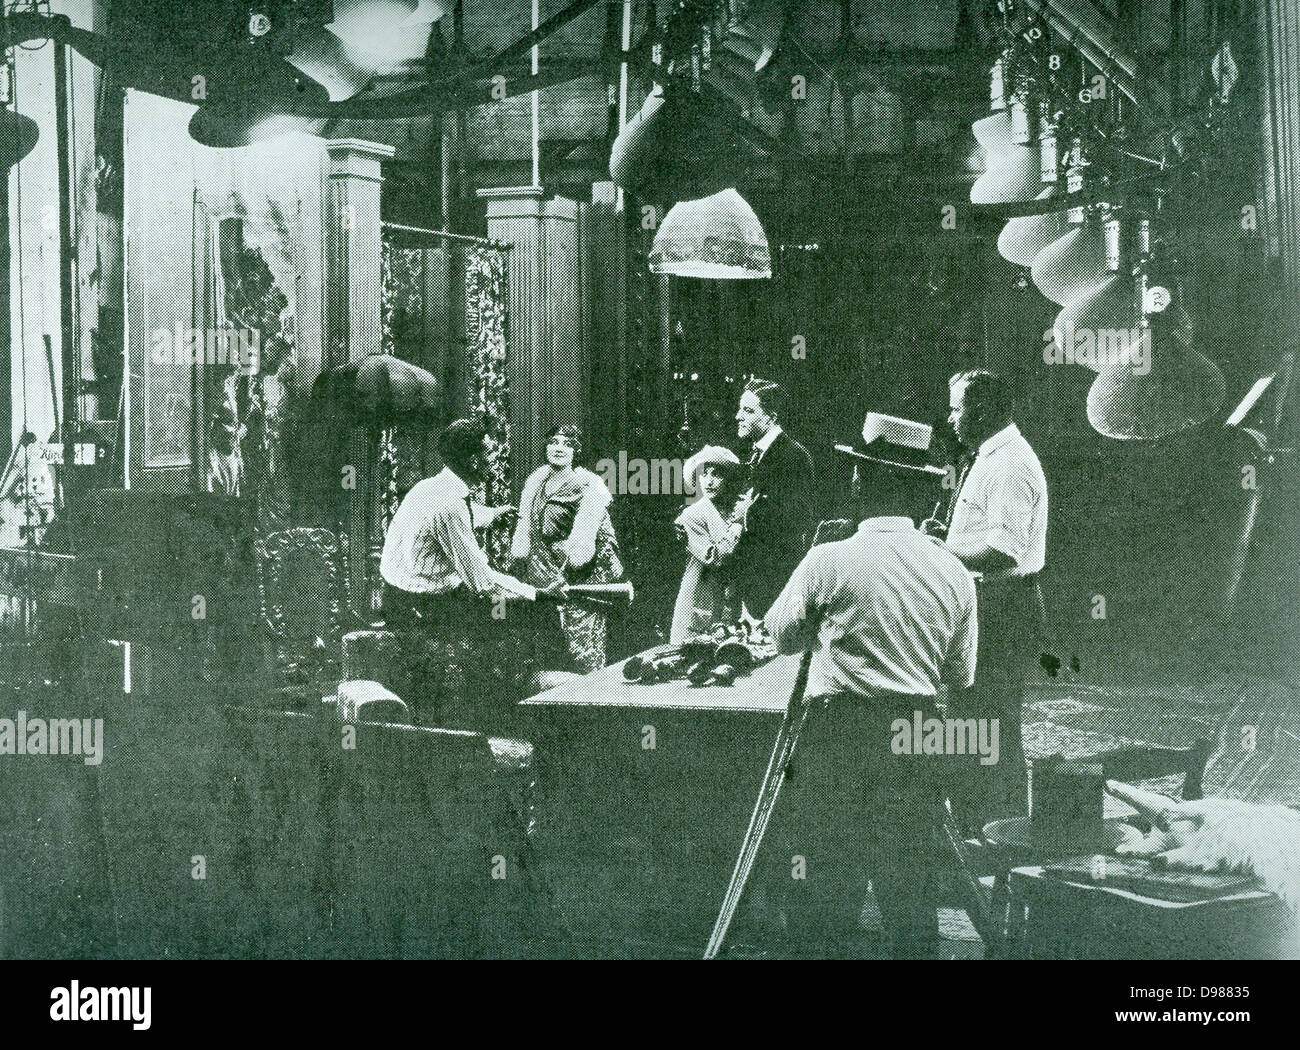 Regisseur am Set während der Dreharbeiten eines Films Stummfilm-Ära. Ca. 1918 Stockfoto